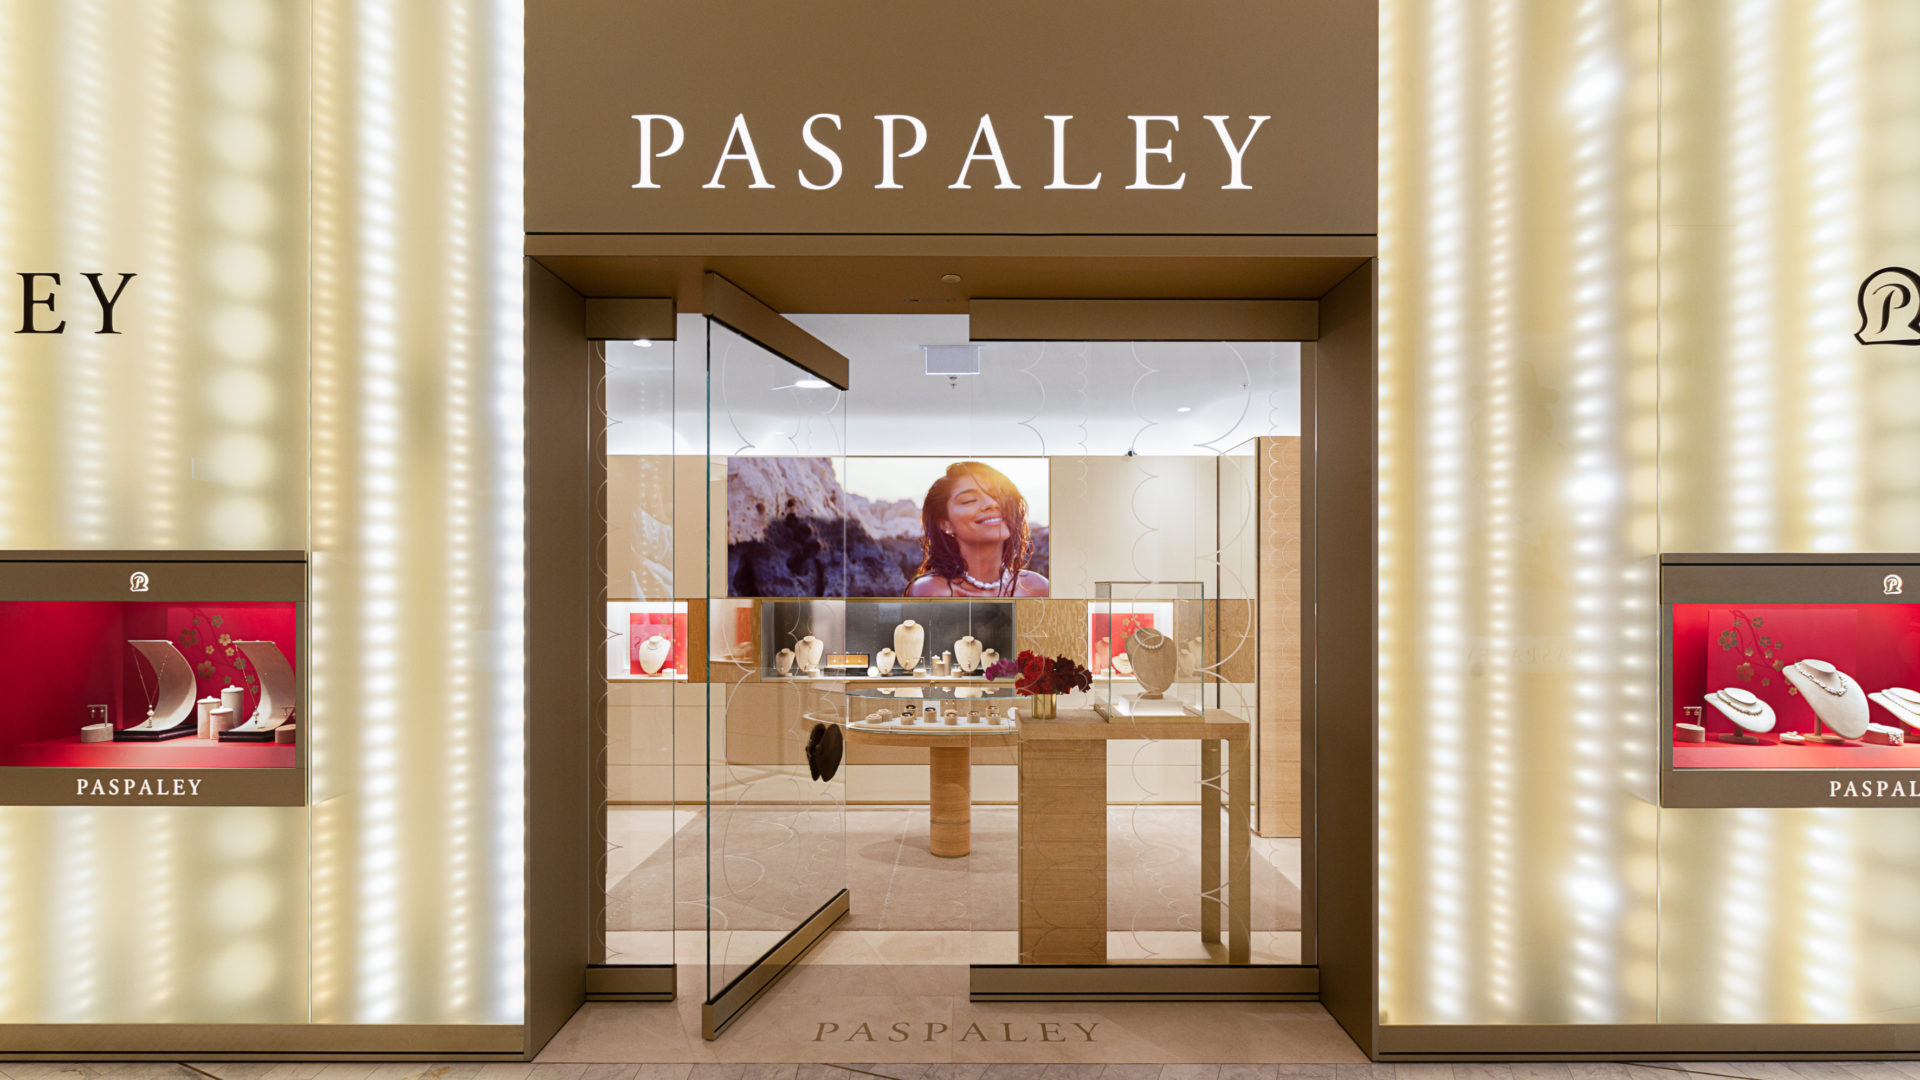 Paspaley Boutique Crown Sydney 28.01.2021 ELT 8674